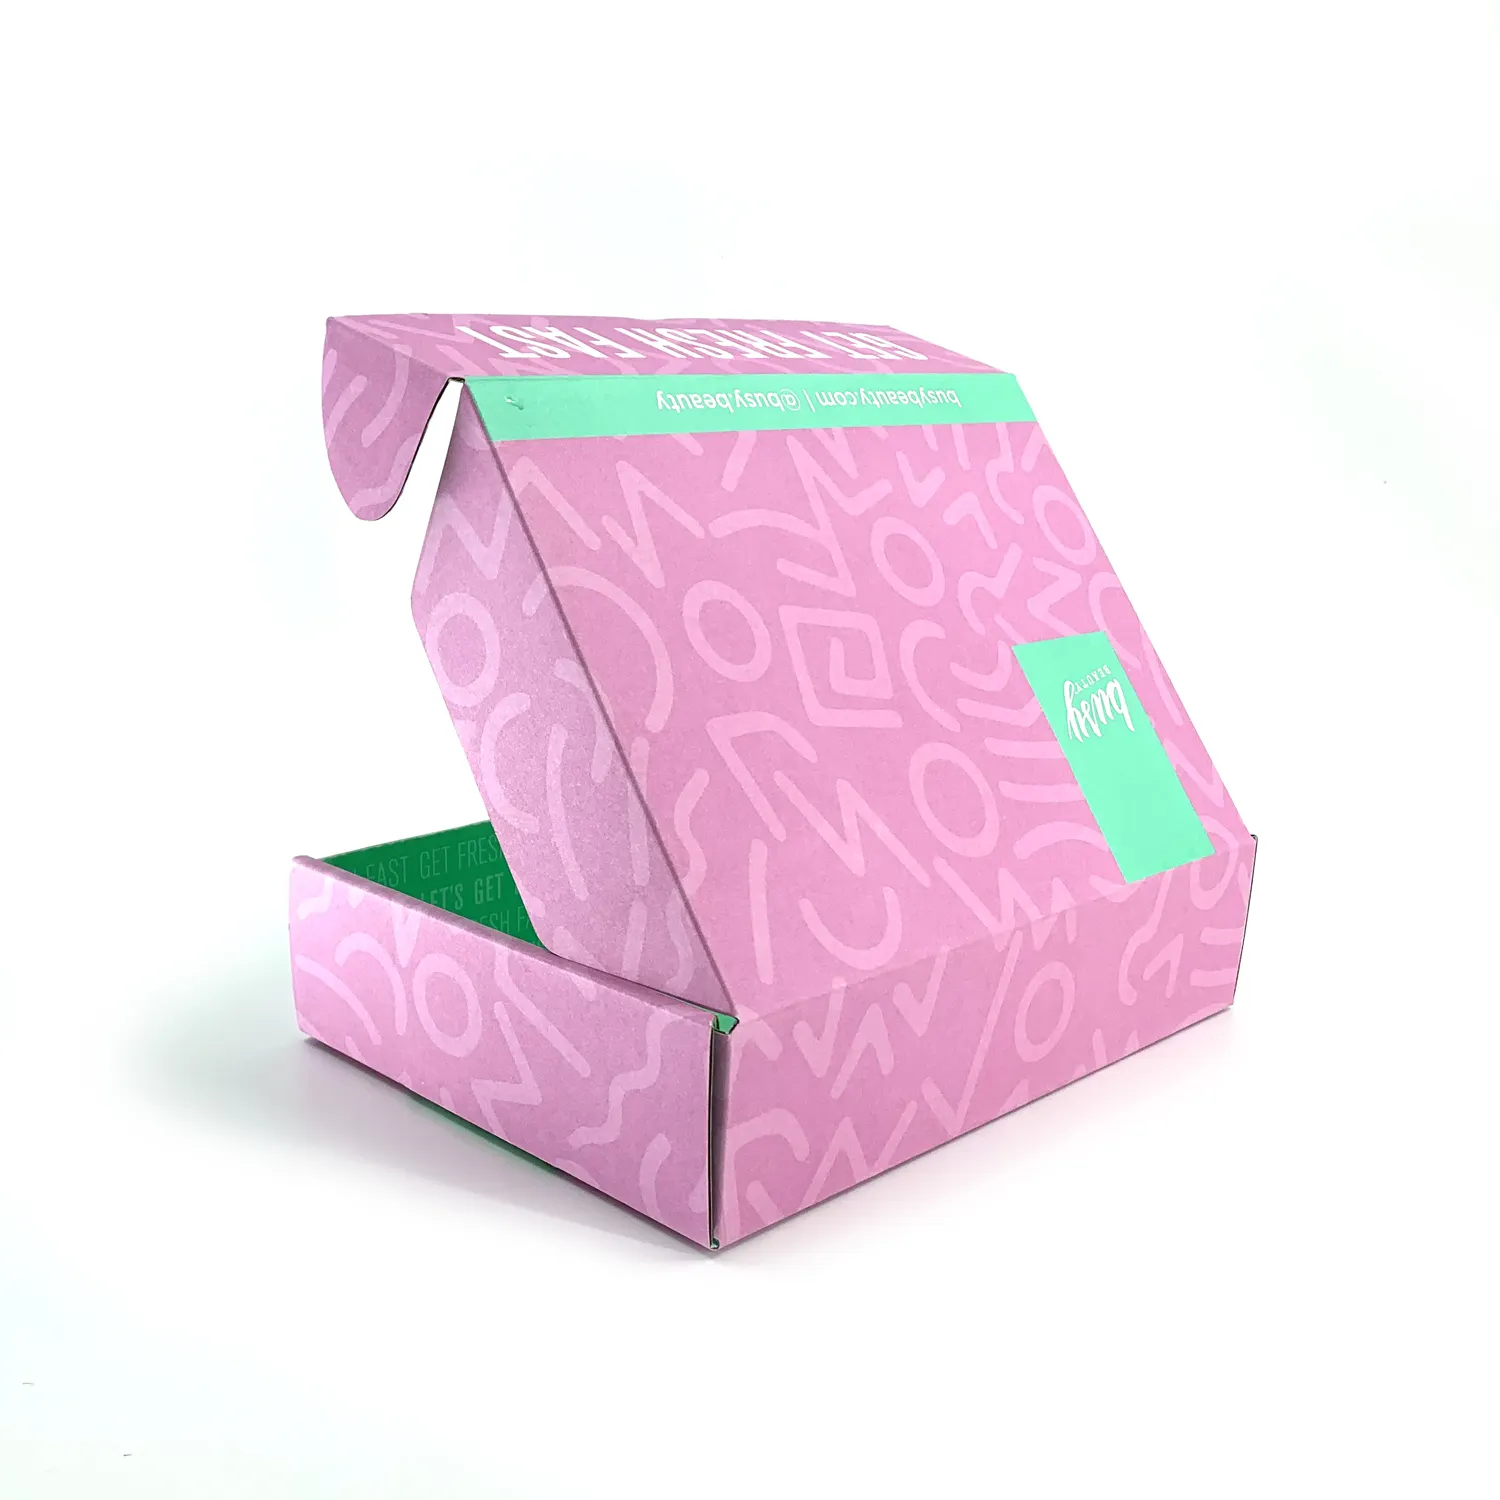 Melhor Impressão do Folheto De Papel Personalizado caixas de Presente Com o Logotipo Da Empresa Difícil Caixa de Sapatos Caixa De Transporte De Papelão Ondulado Para Panos